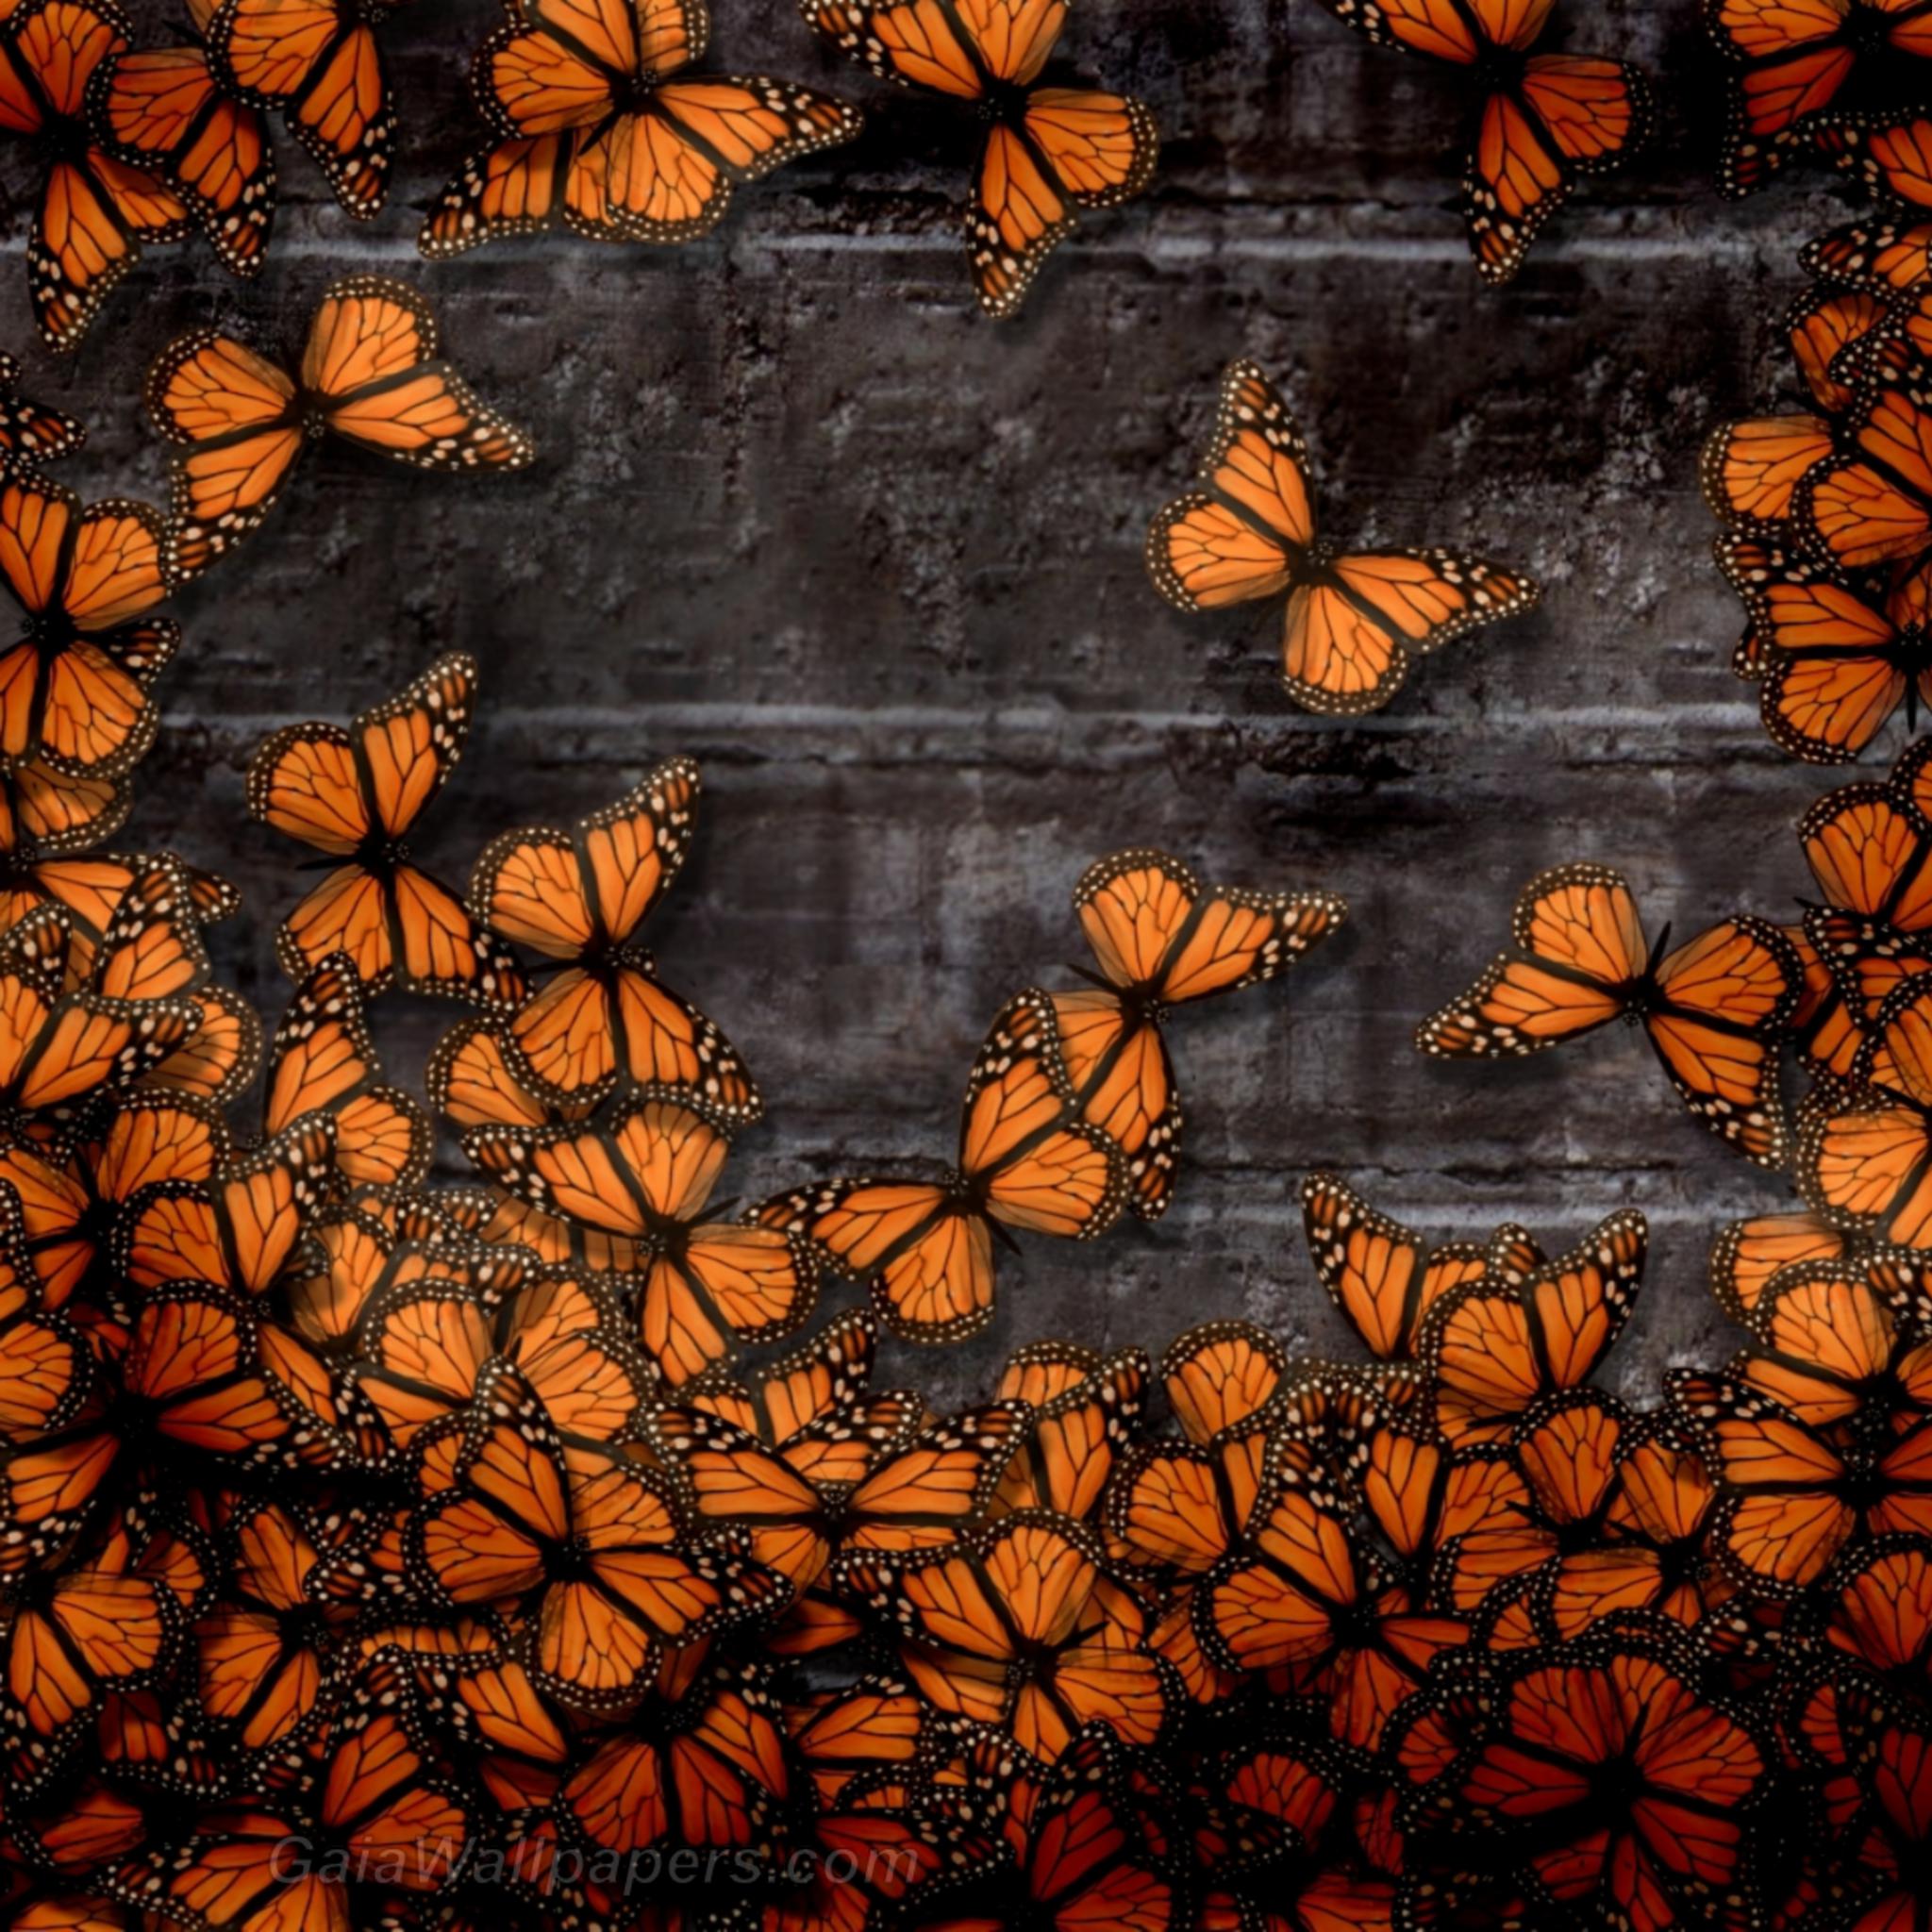 Papillons oranges sur le mur de pierre - Fonds d'écran gratuits